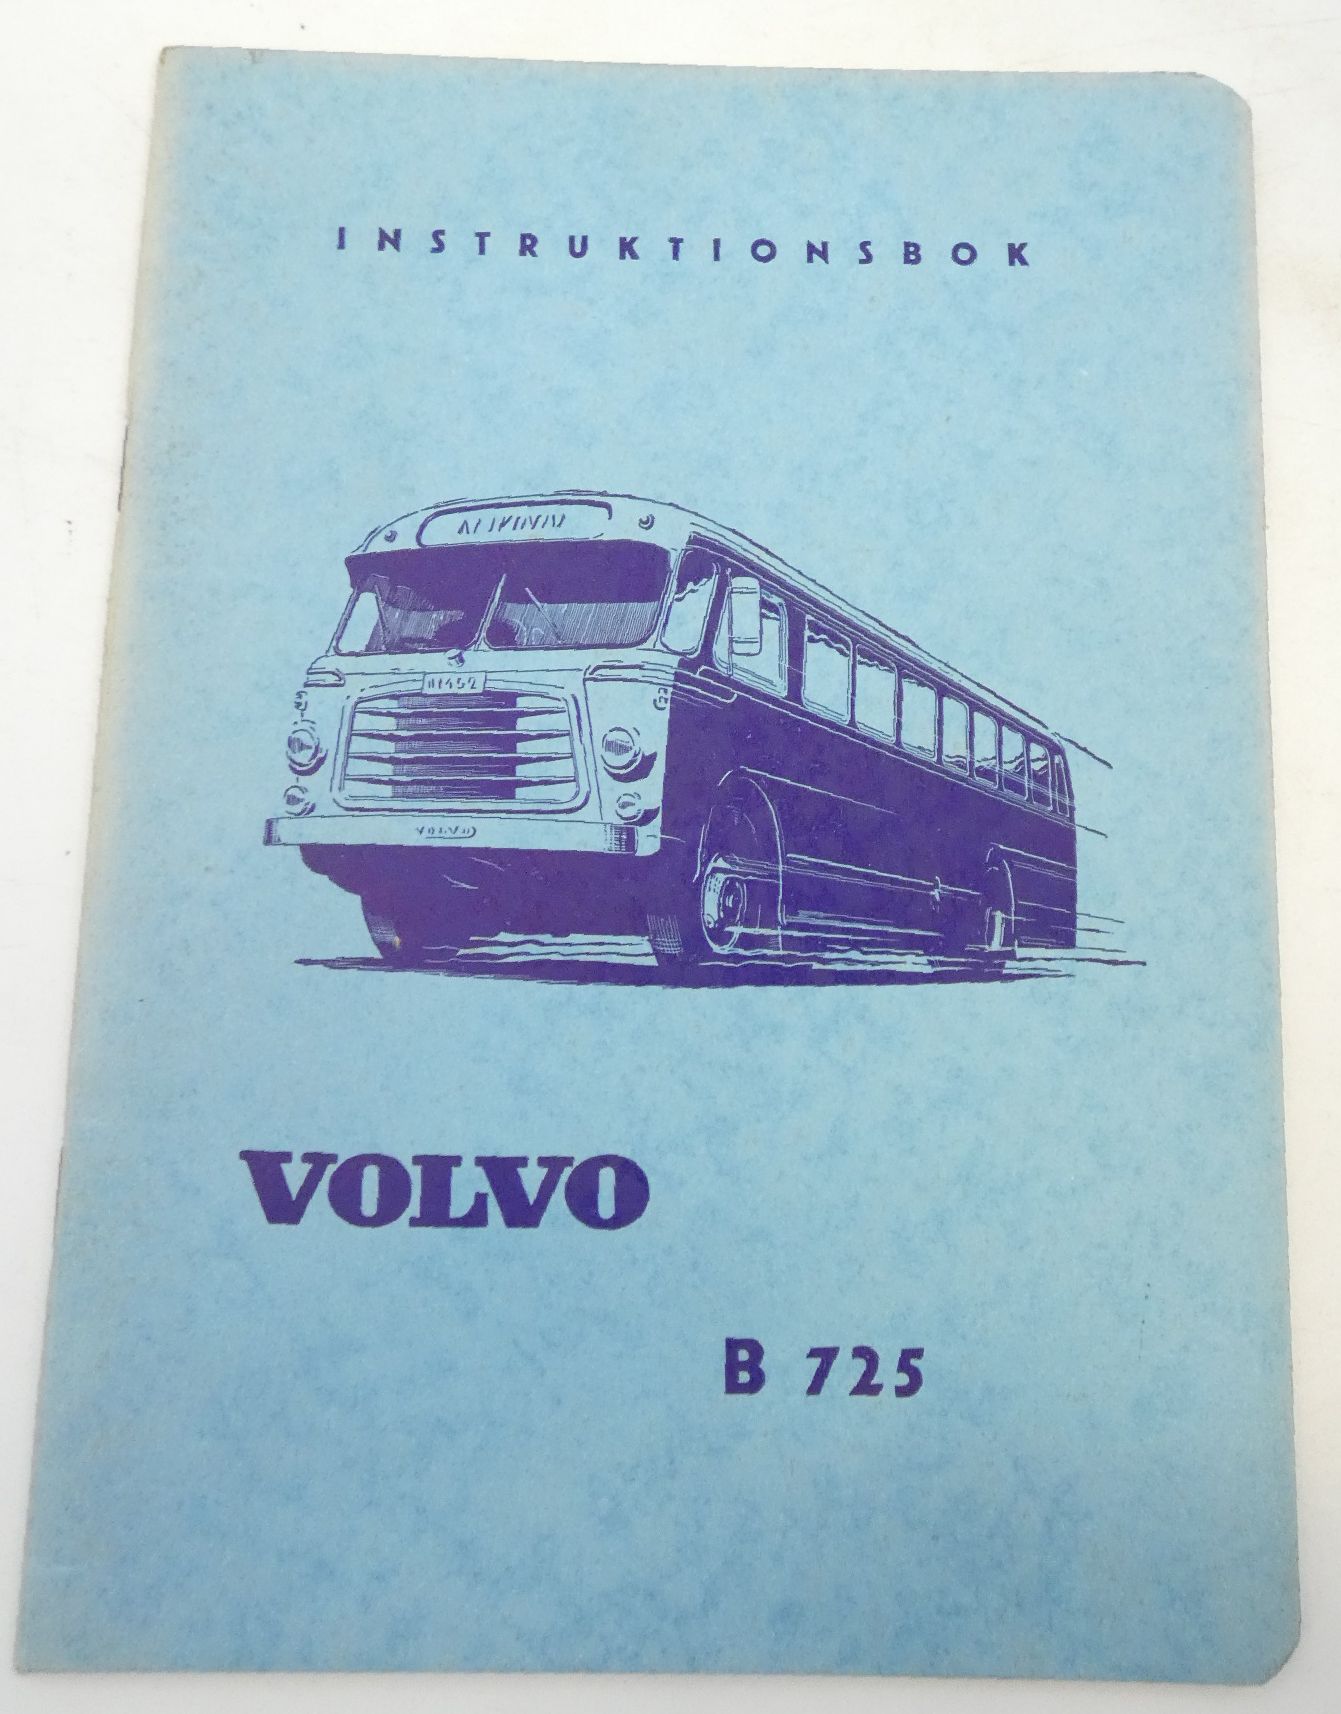 Volvo B725 instruktionsbok